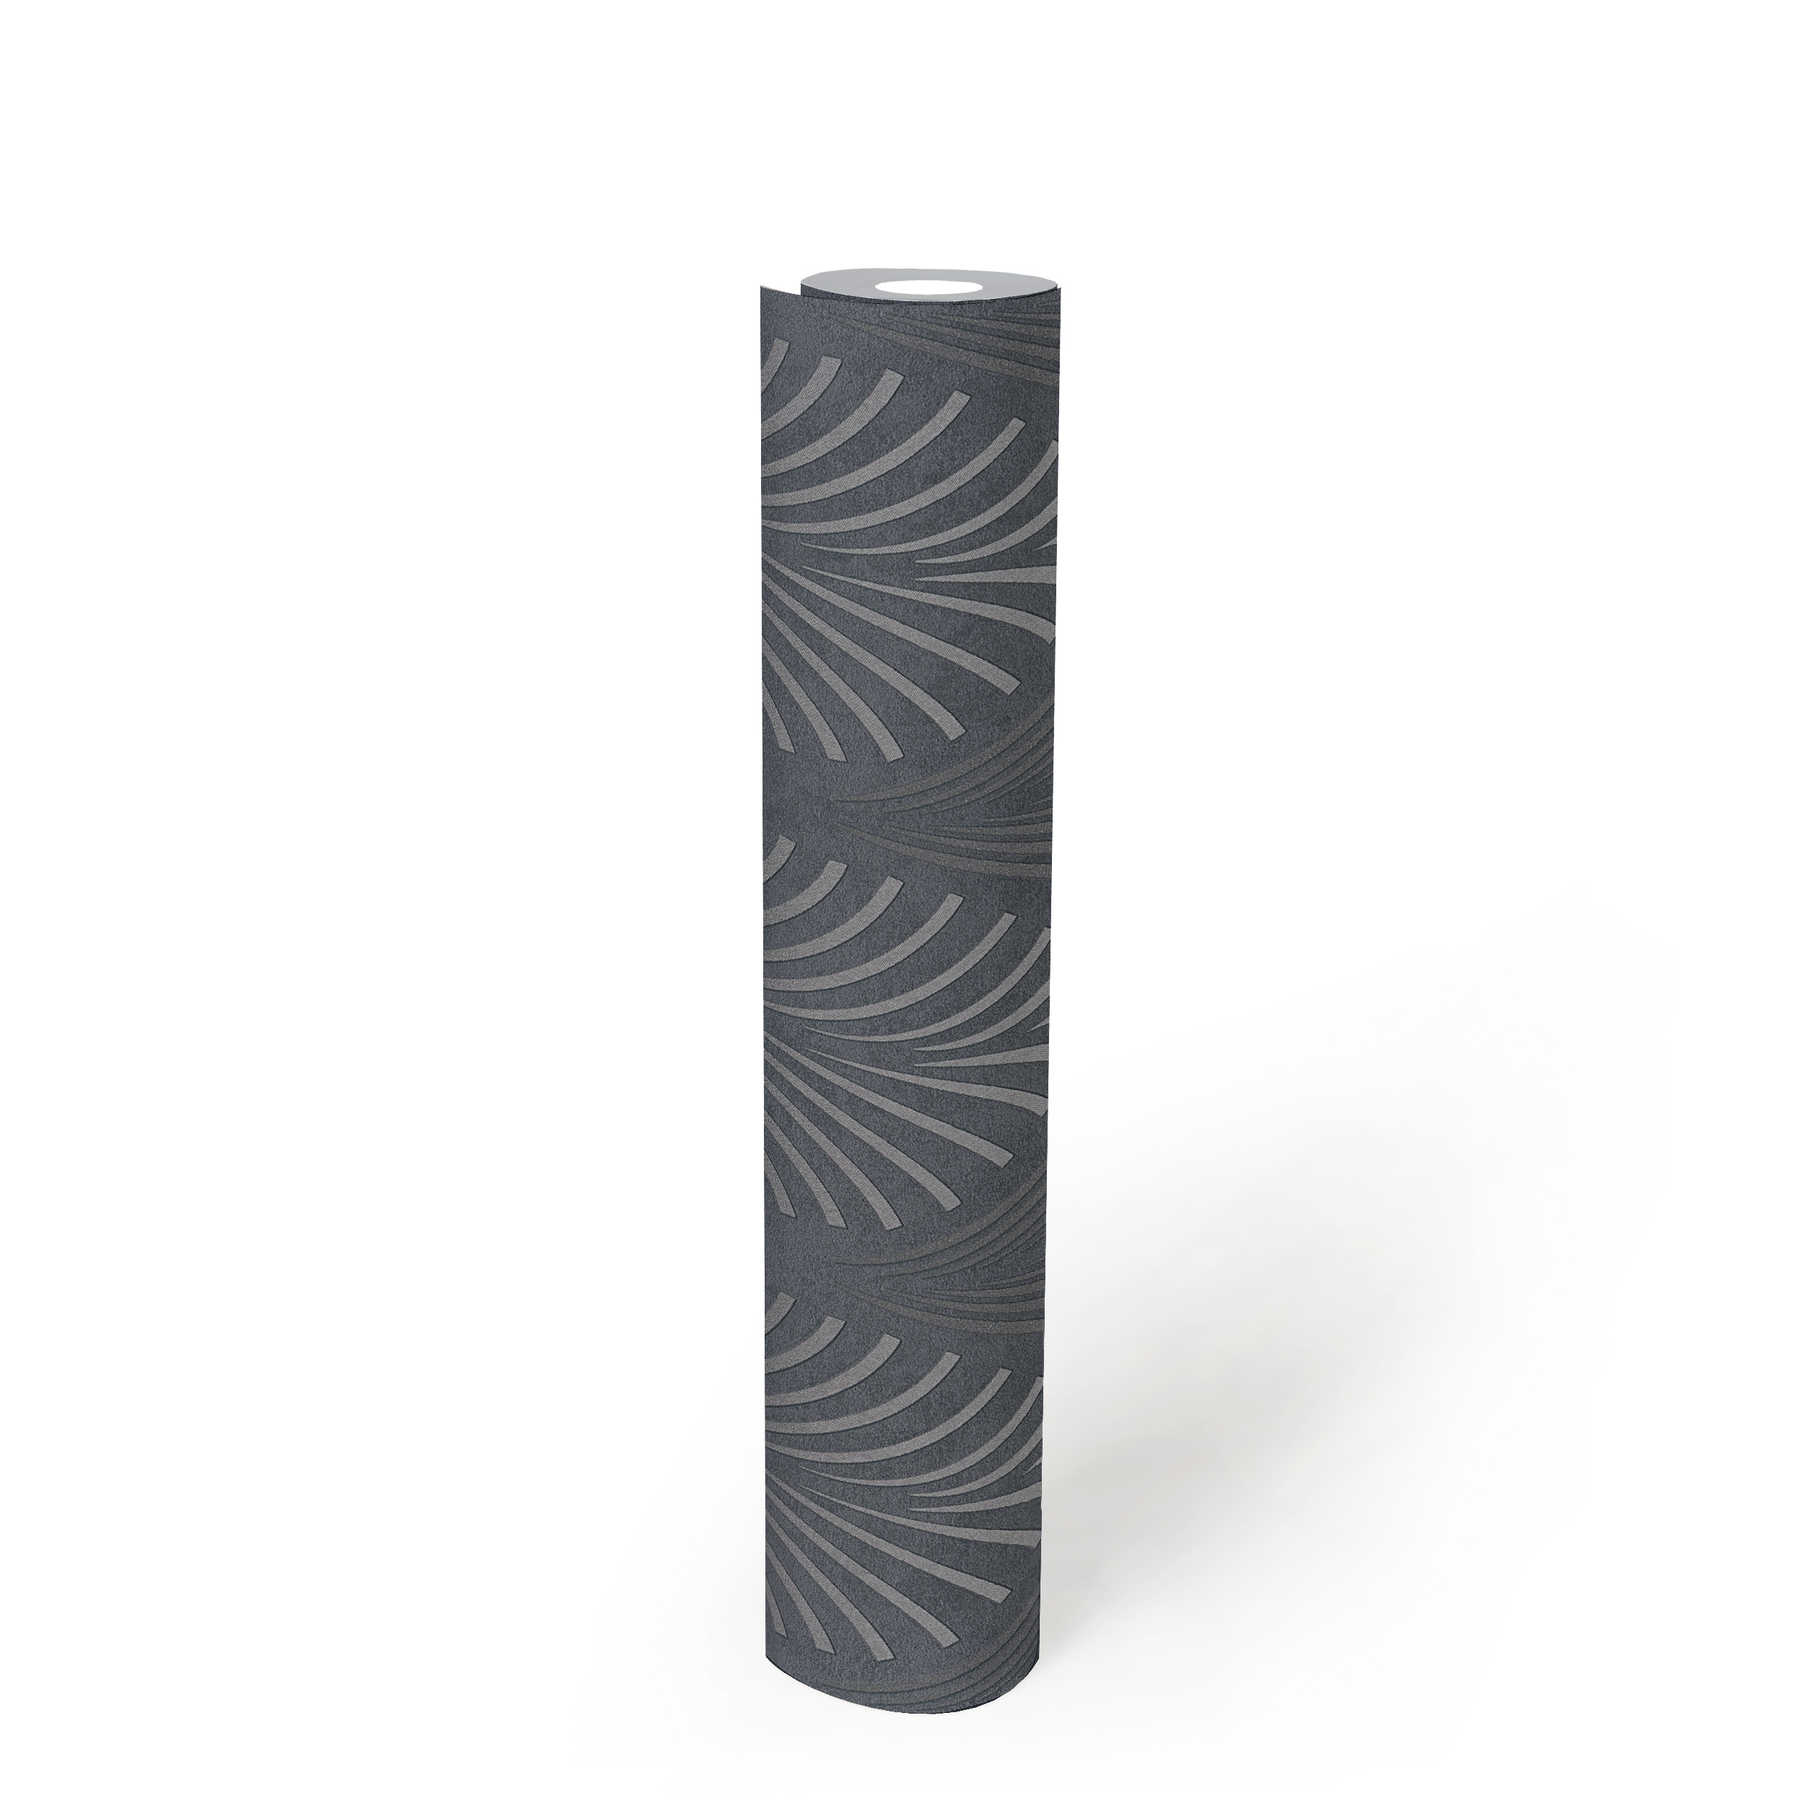             Papier peint rétro style art déco avec motifs géométriques - noir, argent, gris
        